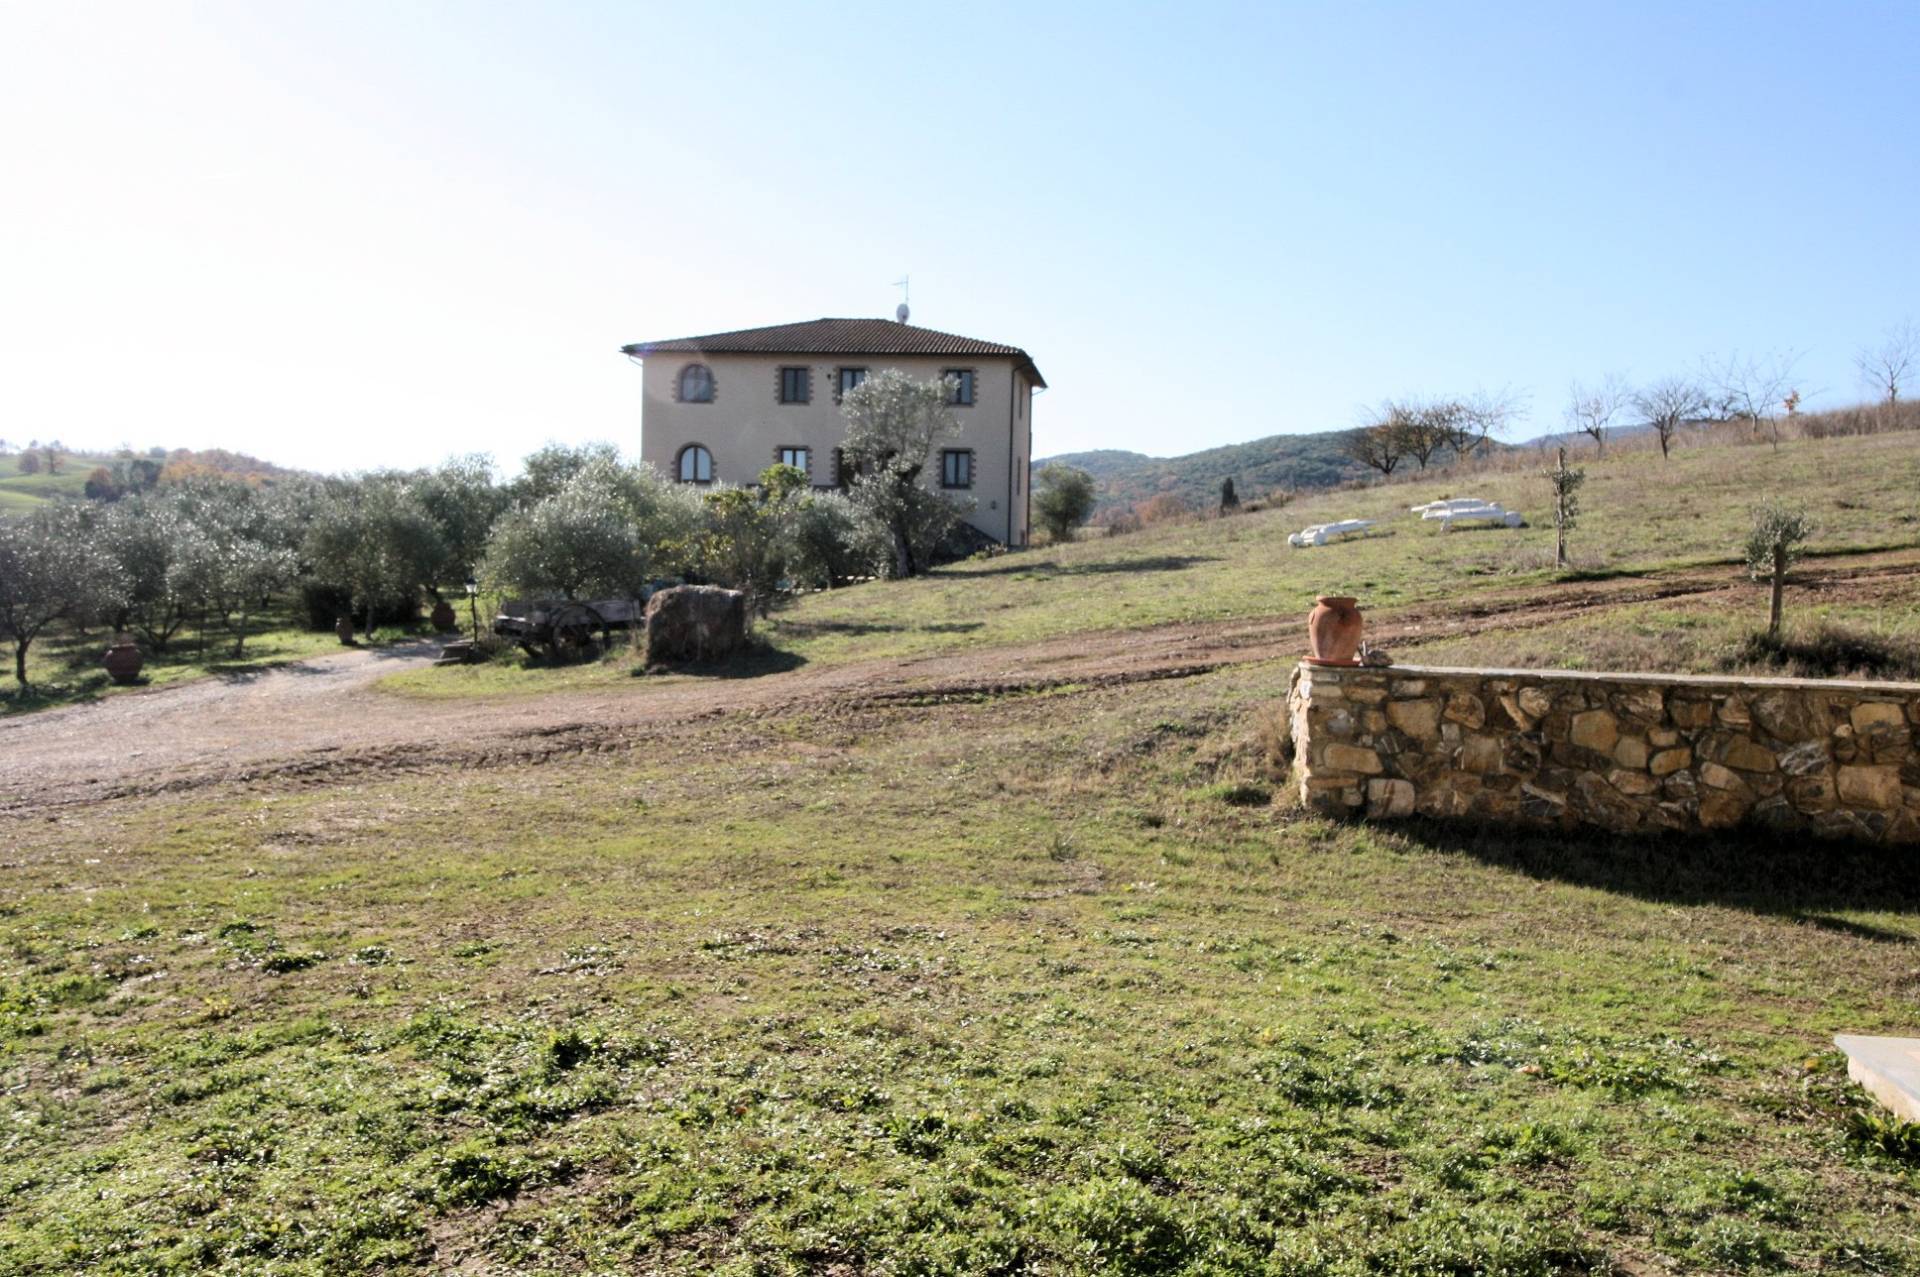 Rustico / Casale in vendita a Civitella Paganico, 19 locali, prezzo € 800.000 | PortaleAgenzieImmobiliari.it